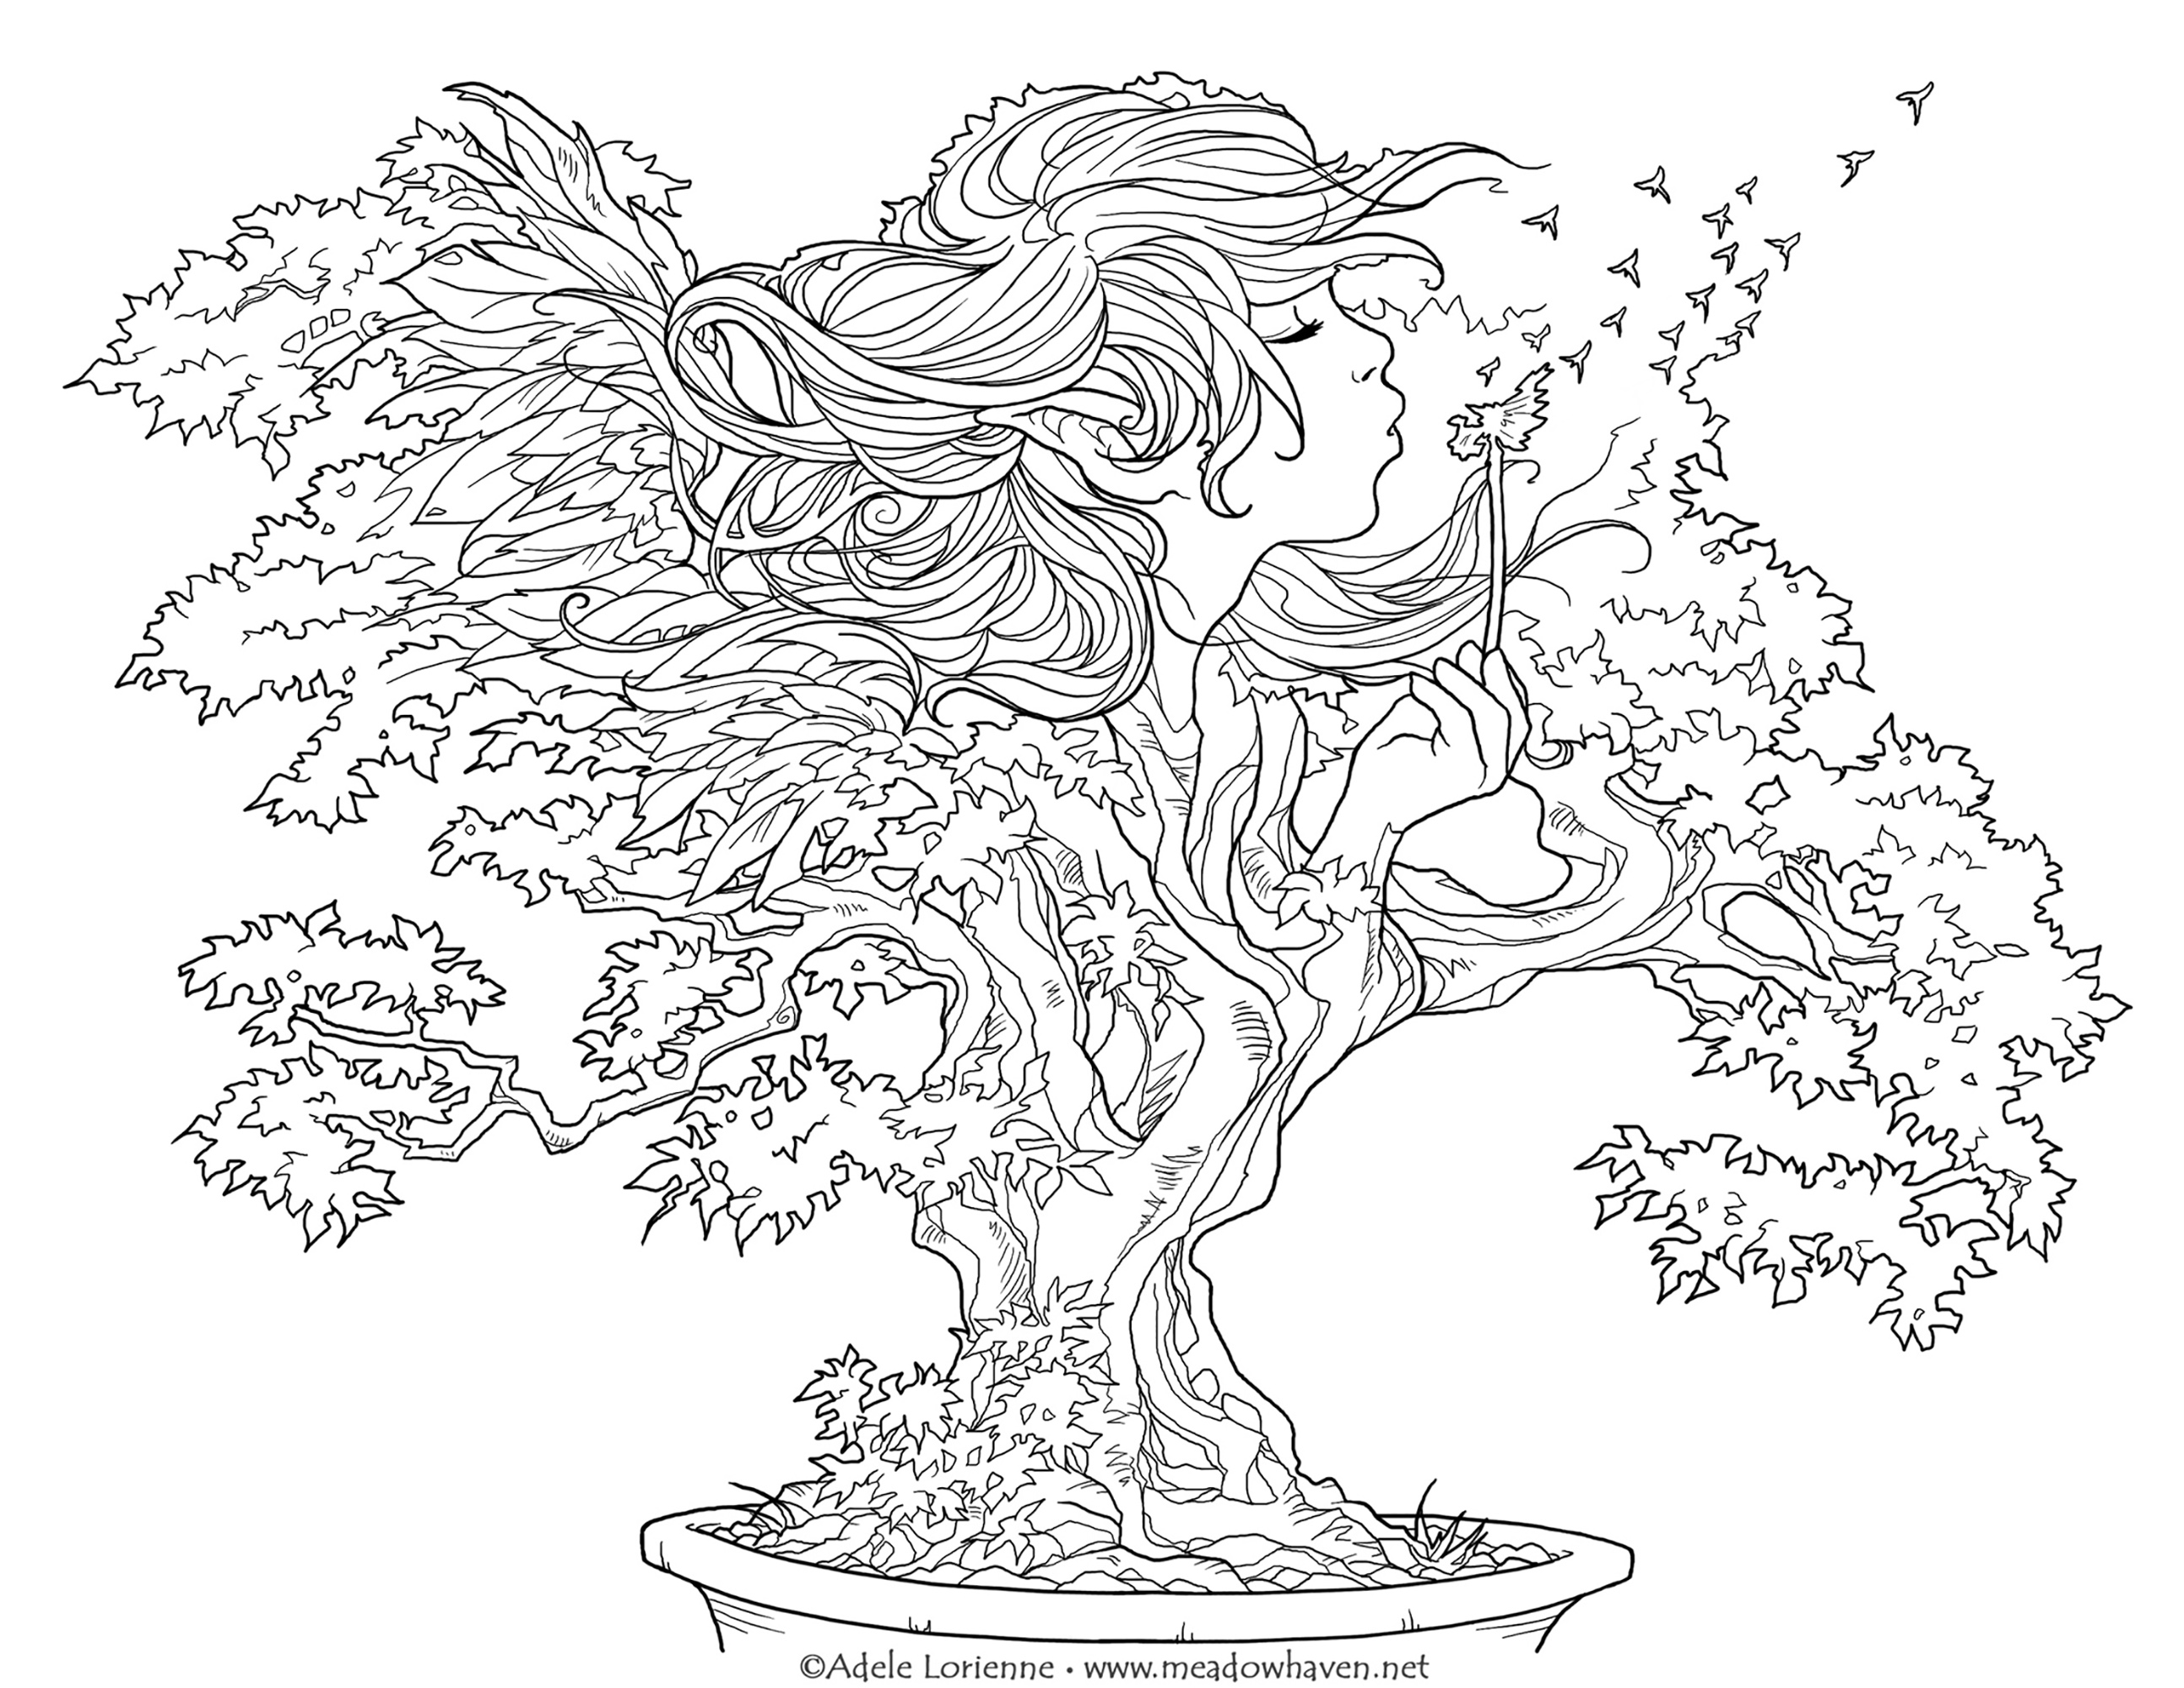 Esprimete un desiderio e questo bonsaï lo esaudirà dopo alcuni colori!, Artista : Meadowhaven